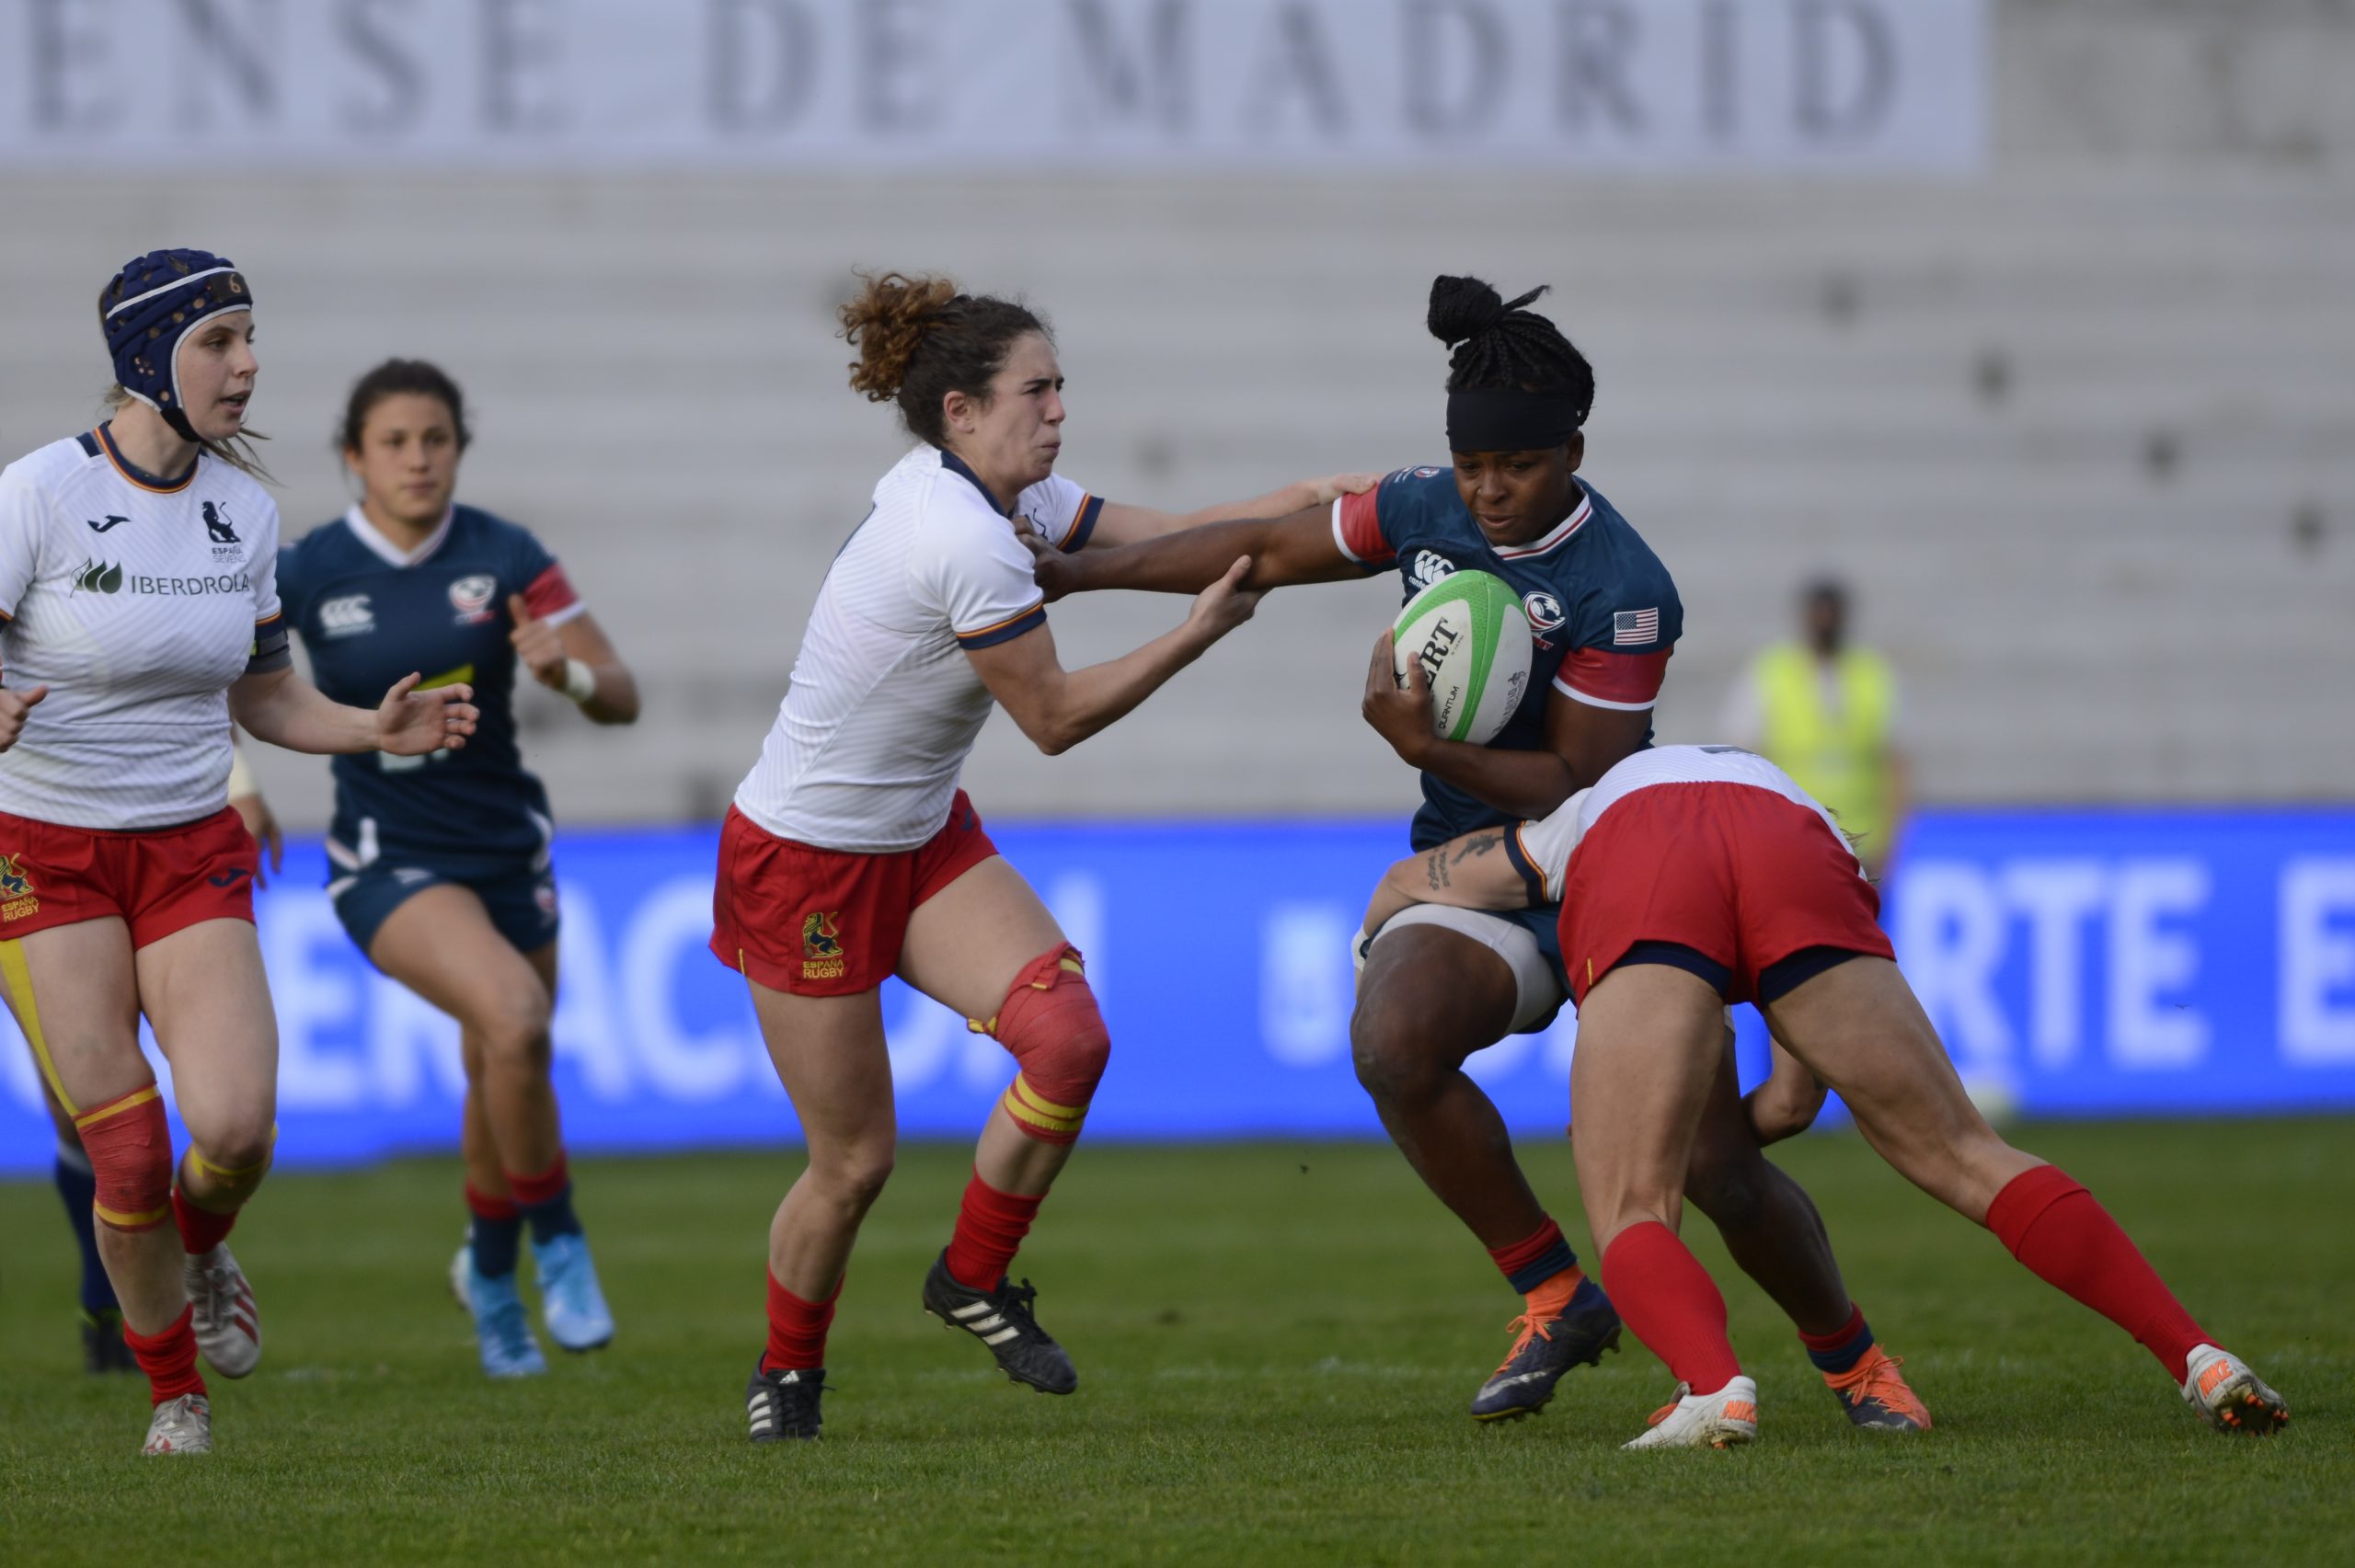 Madrid Rugby 7s: reajuste de horarios tras una alarma de falsos positivos